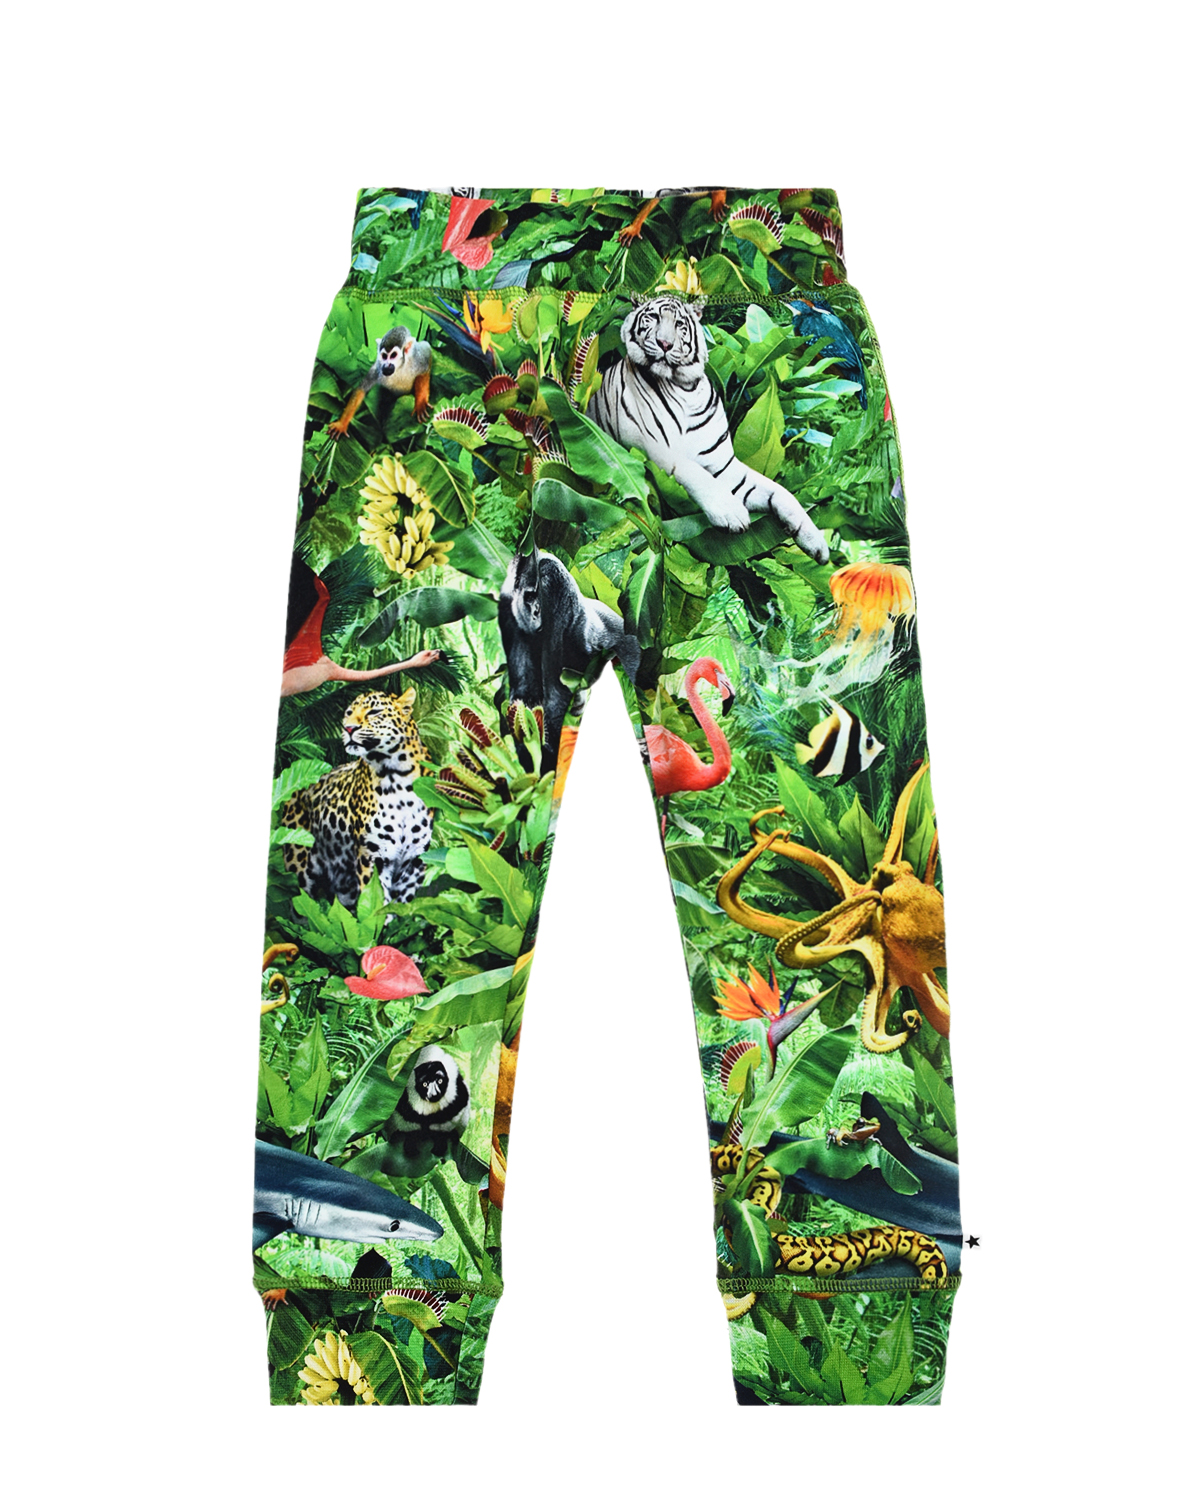 Спортивные брюки с принтом "Звери в джунглях" Molo детские, размер 74, цвет зеленый - фото 1